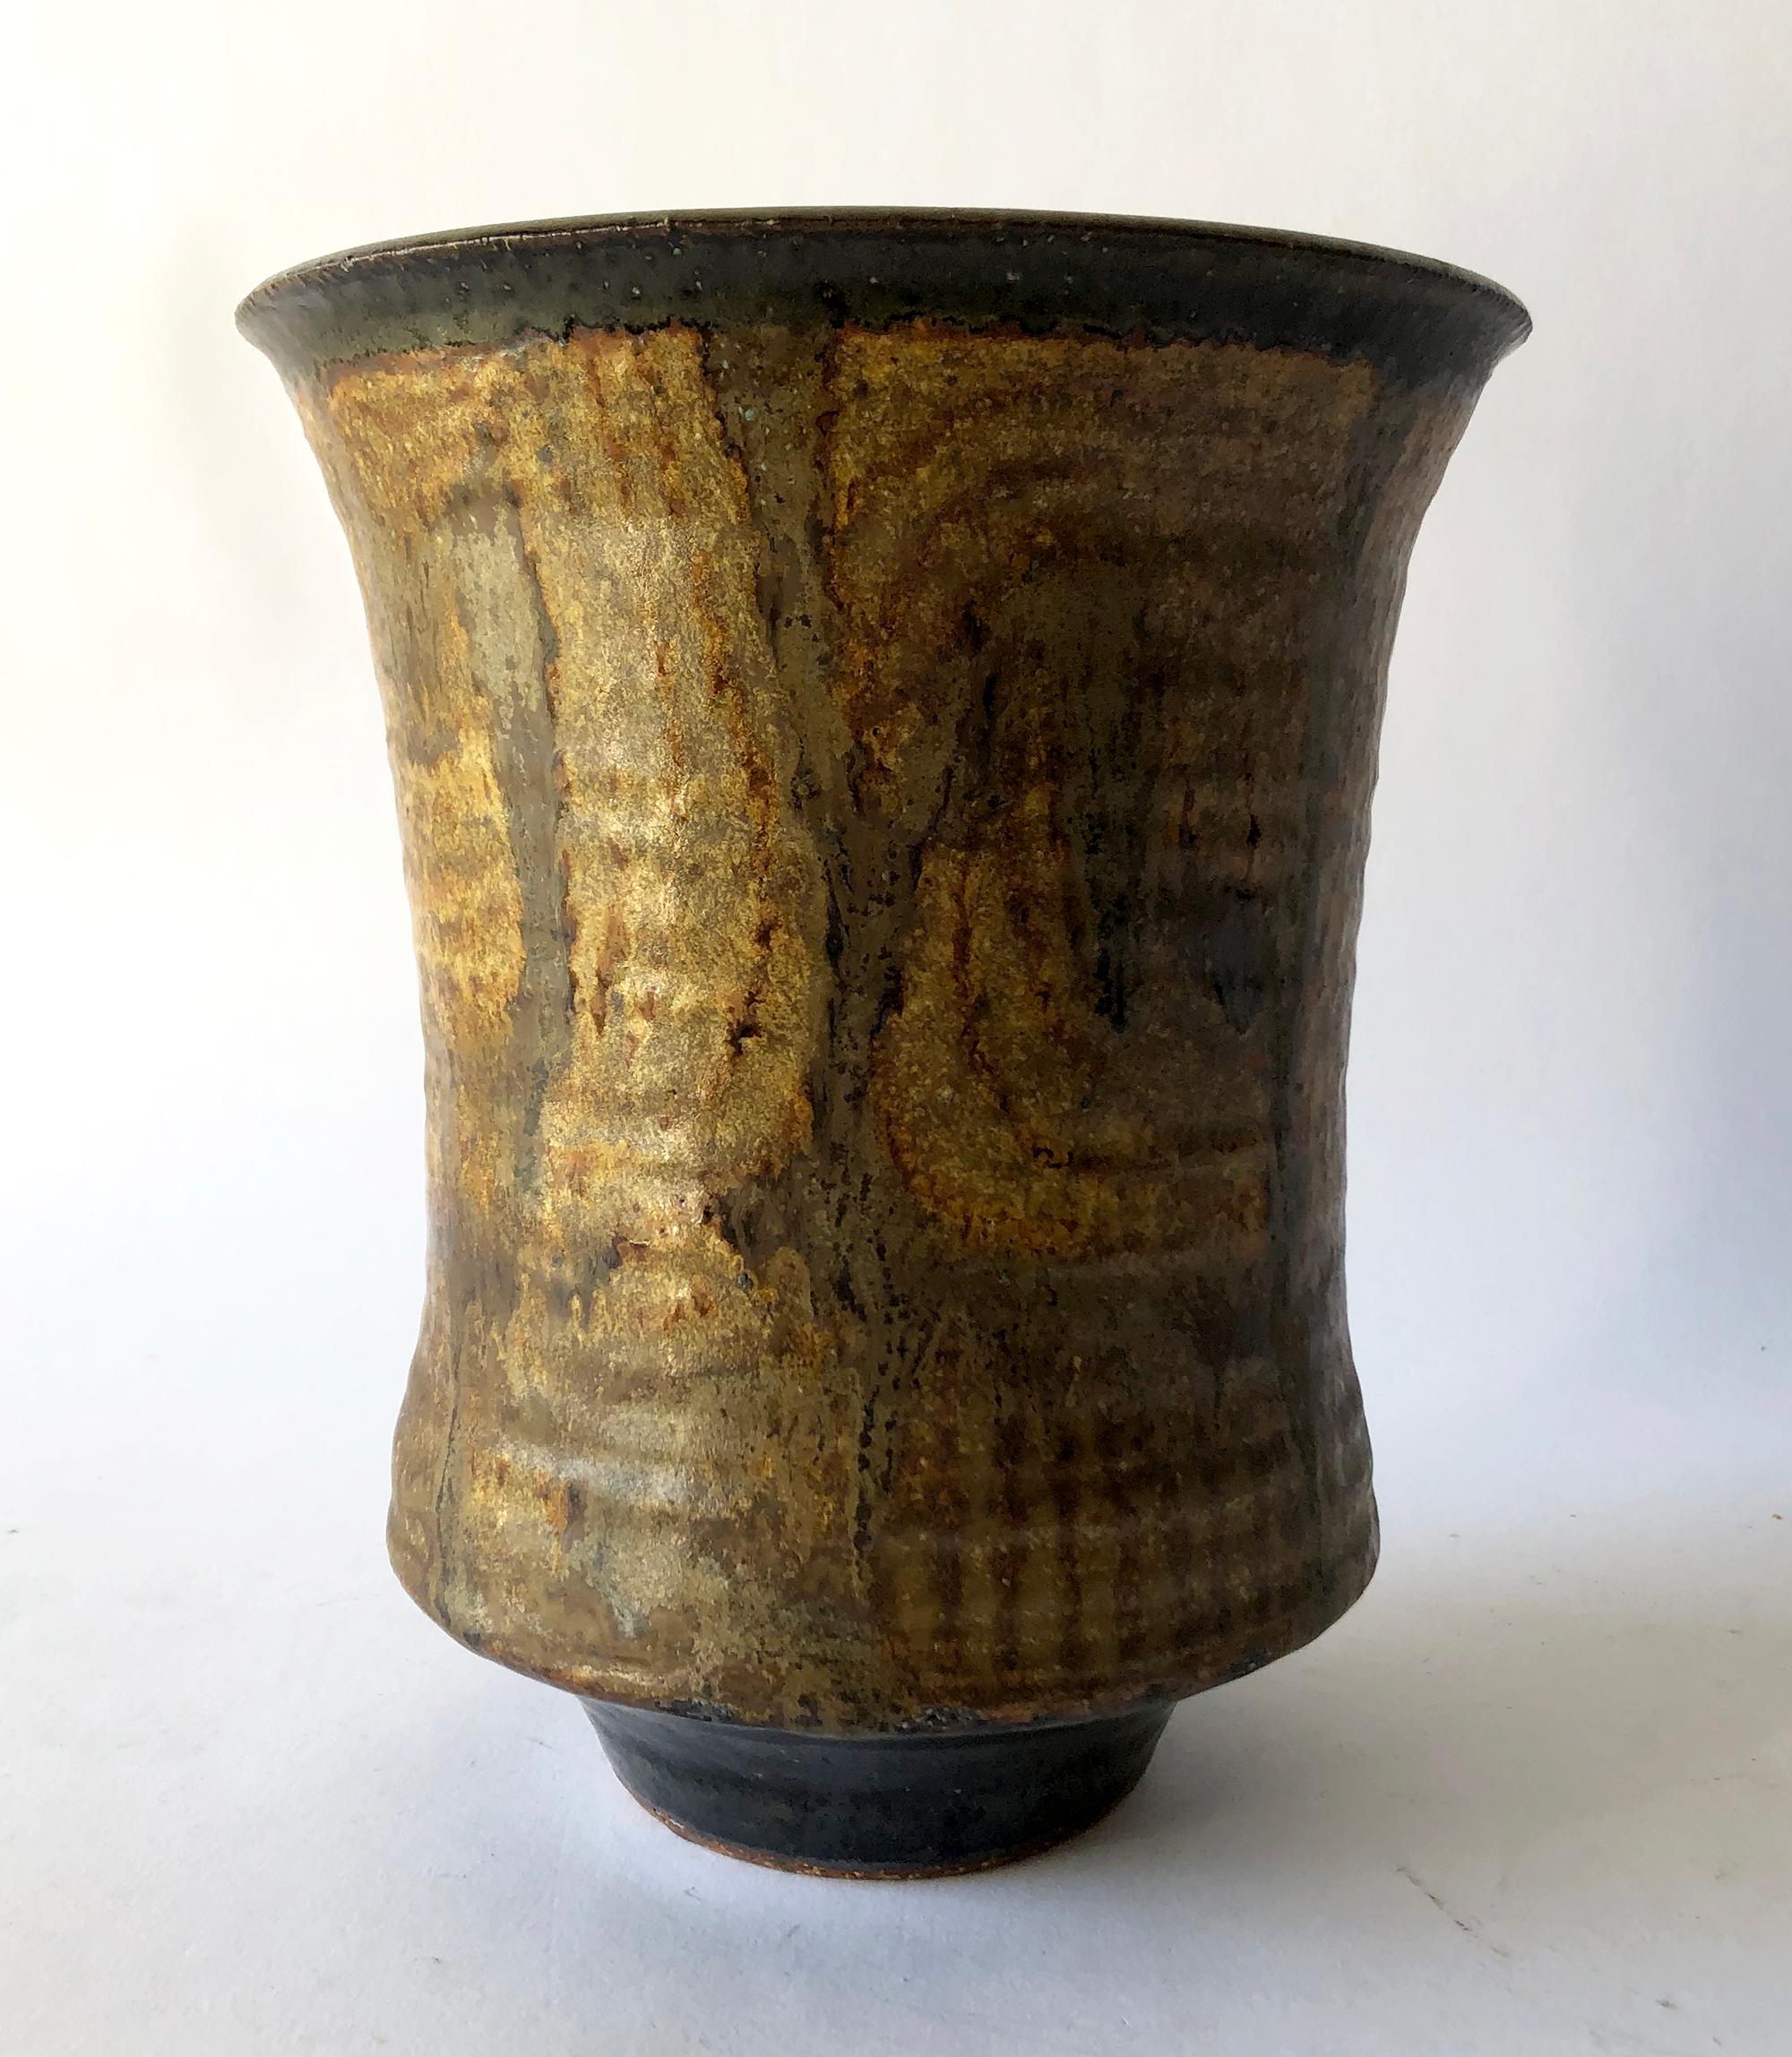 Studio-Vase aus Kalifornien, hergestellt von Raul Coronel, 1974. Die Vase misst 8 3/4